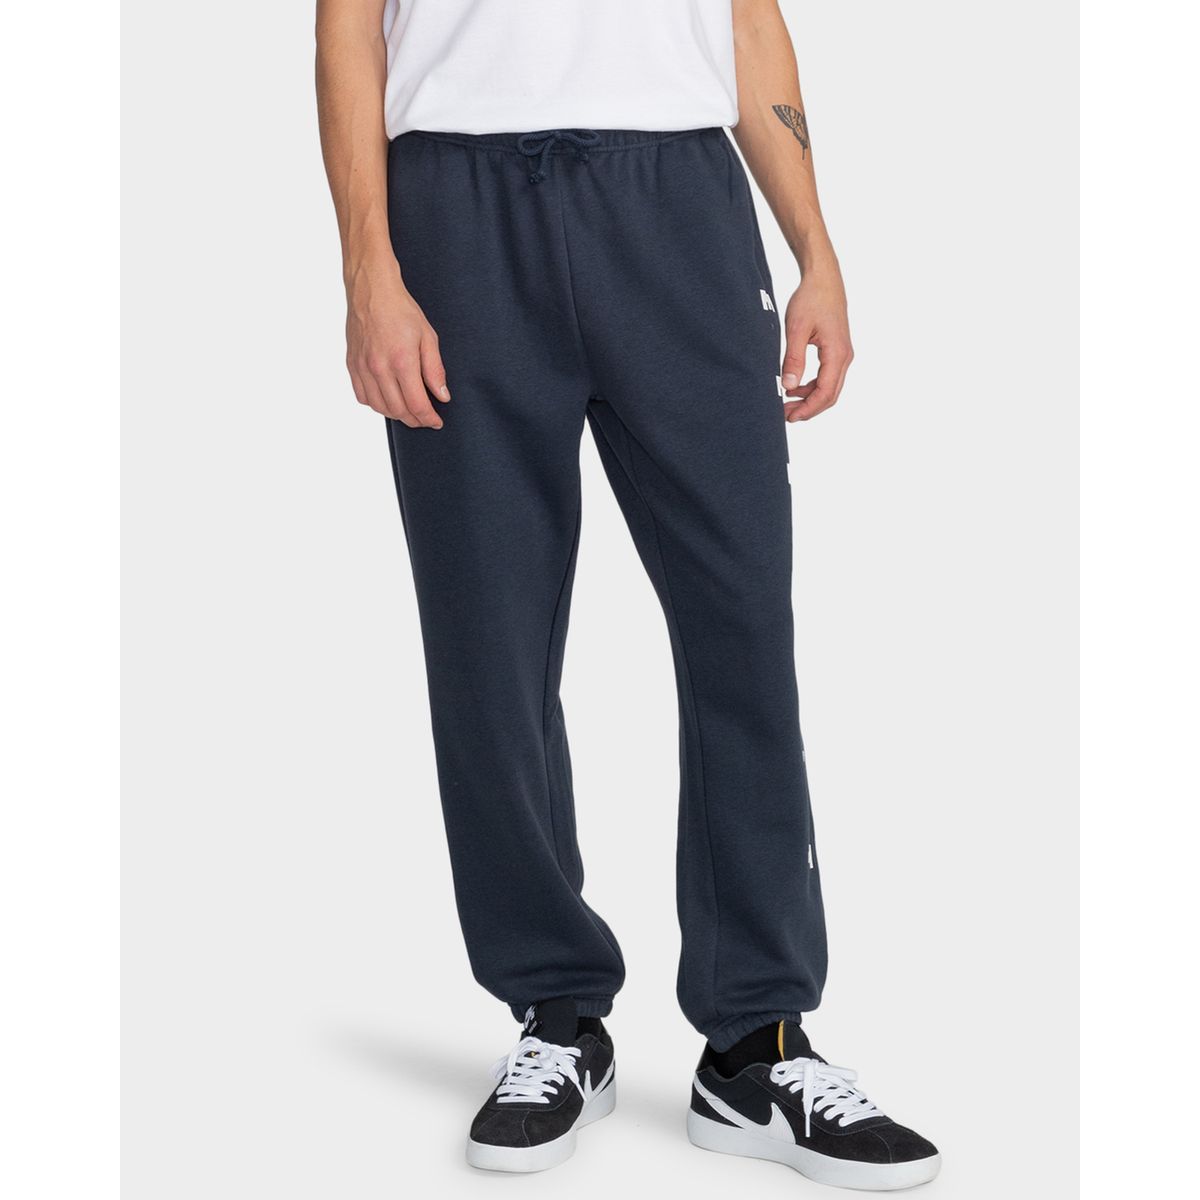 Pantalon de Jogging Homme Bleu. XL Visiter la boutique ElementElementCornell 